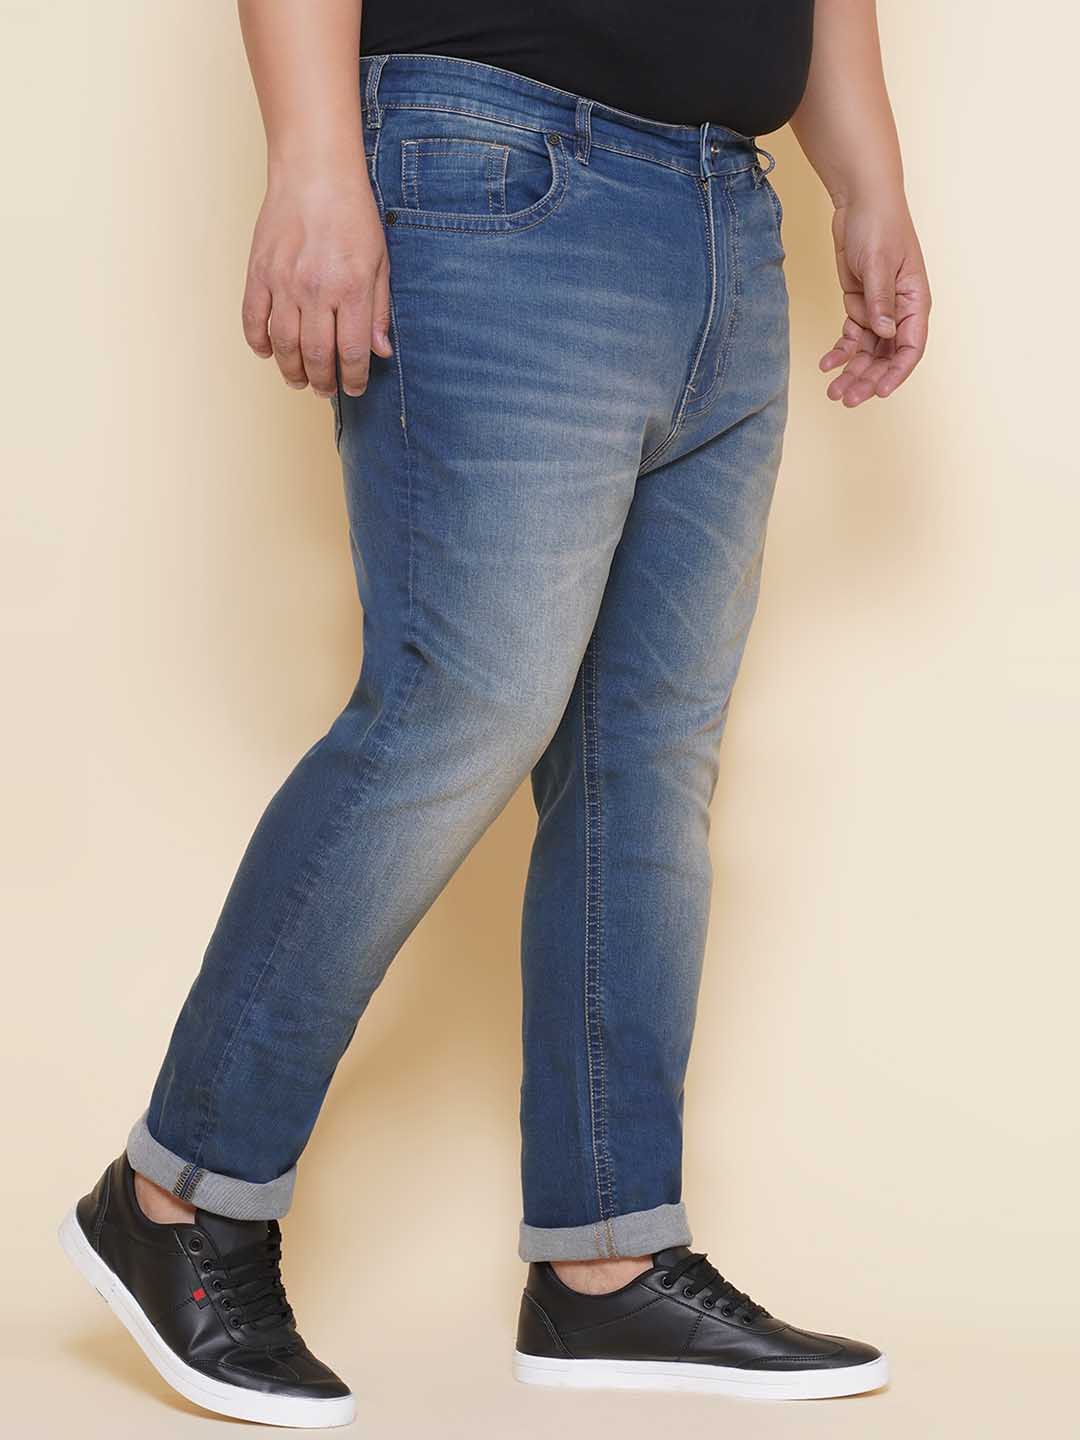 bottomwear/jeans/JPJ27108/jpj27108-3.jpg